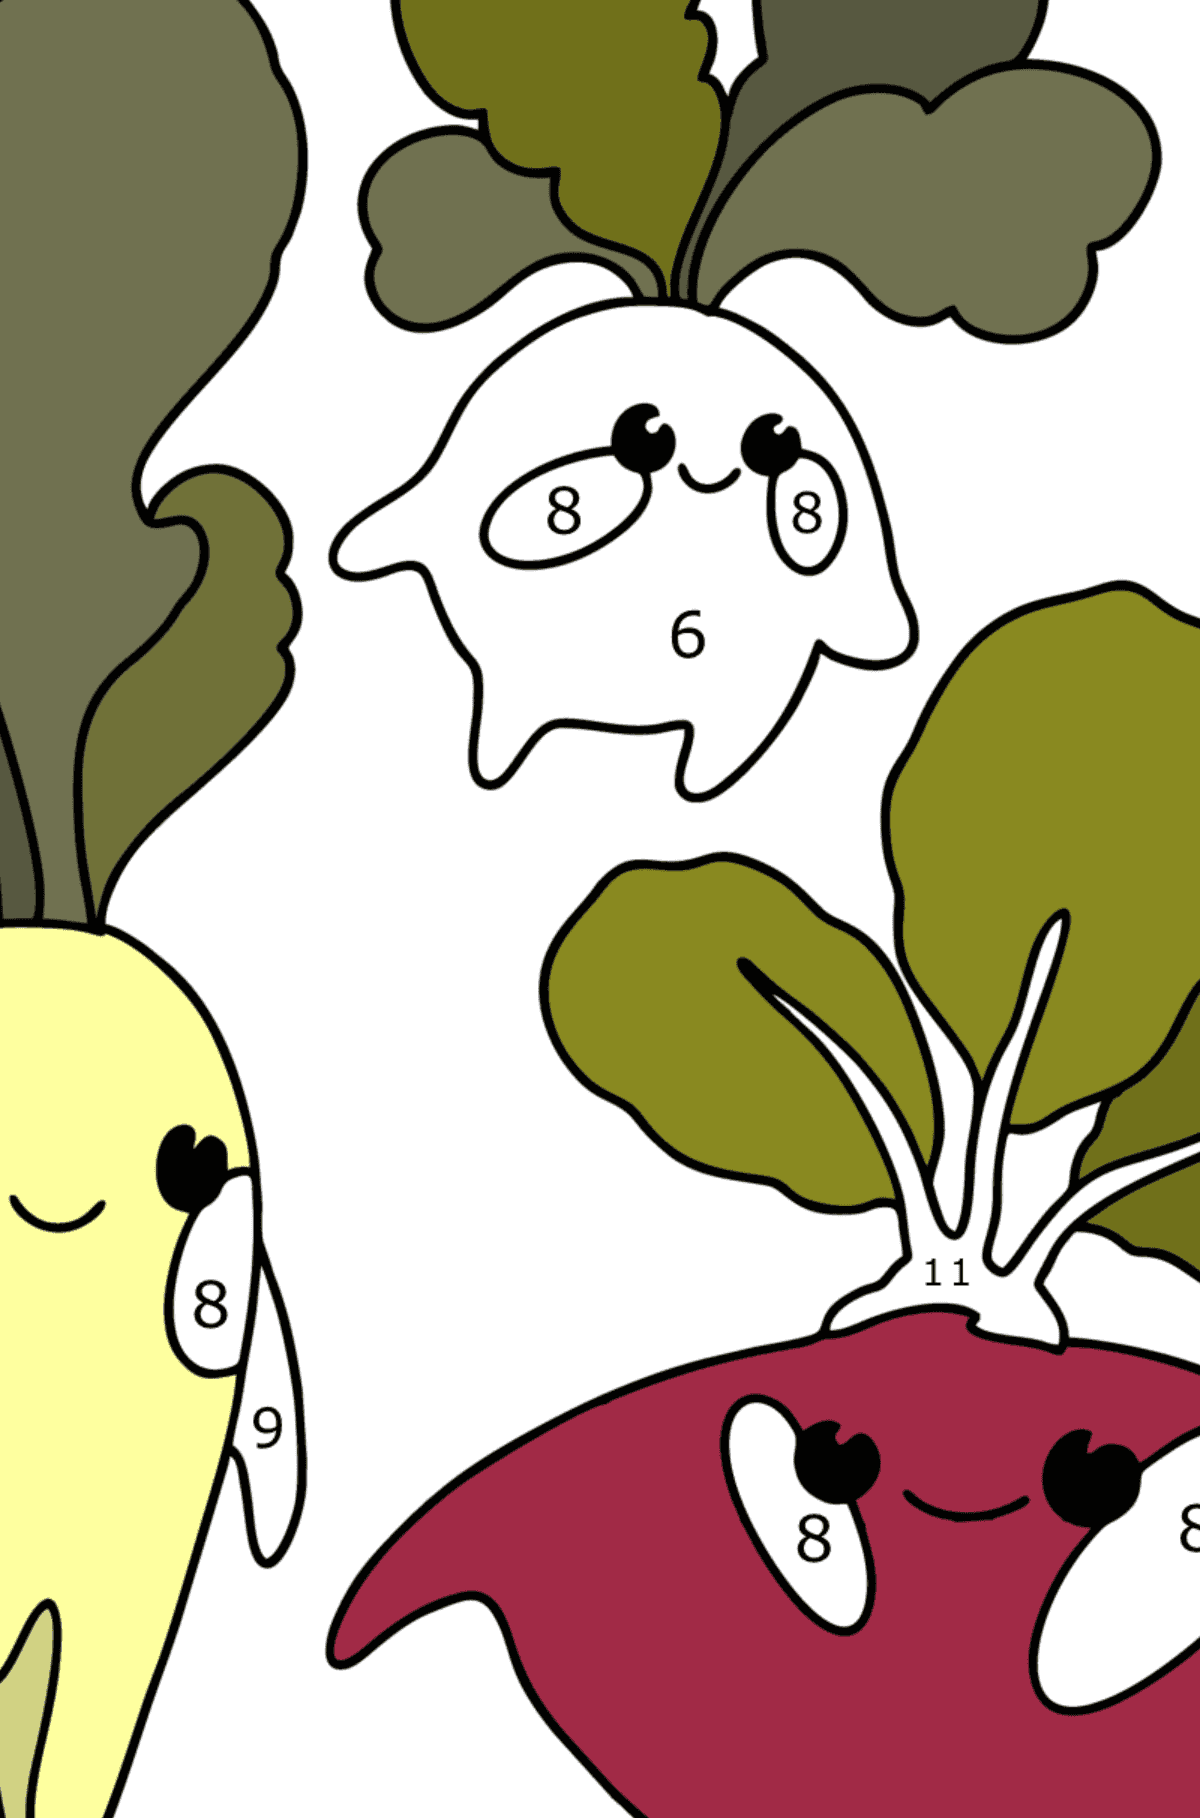 Coloriage Légumes ( daikon, radis, betteraves ) - Coloriage par Chiffres pour les Enfants